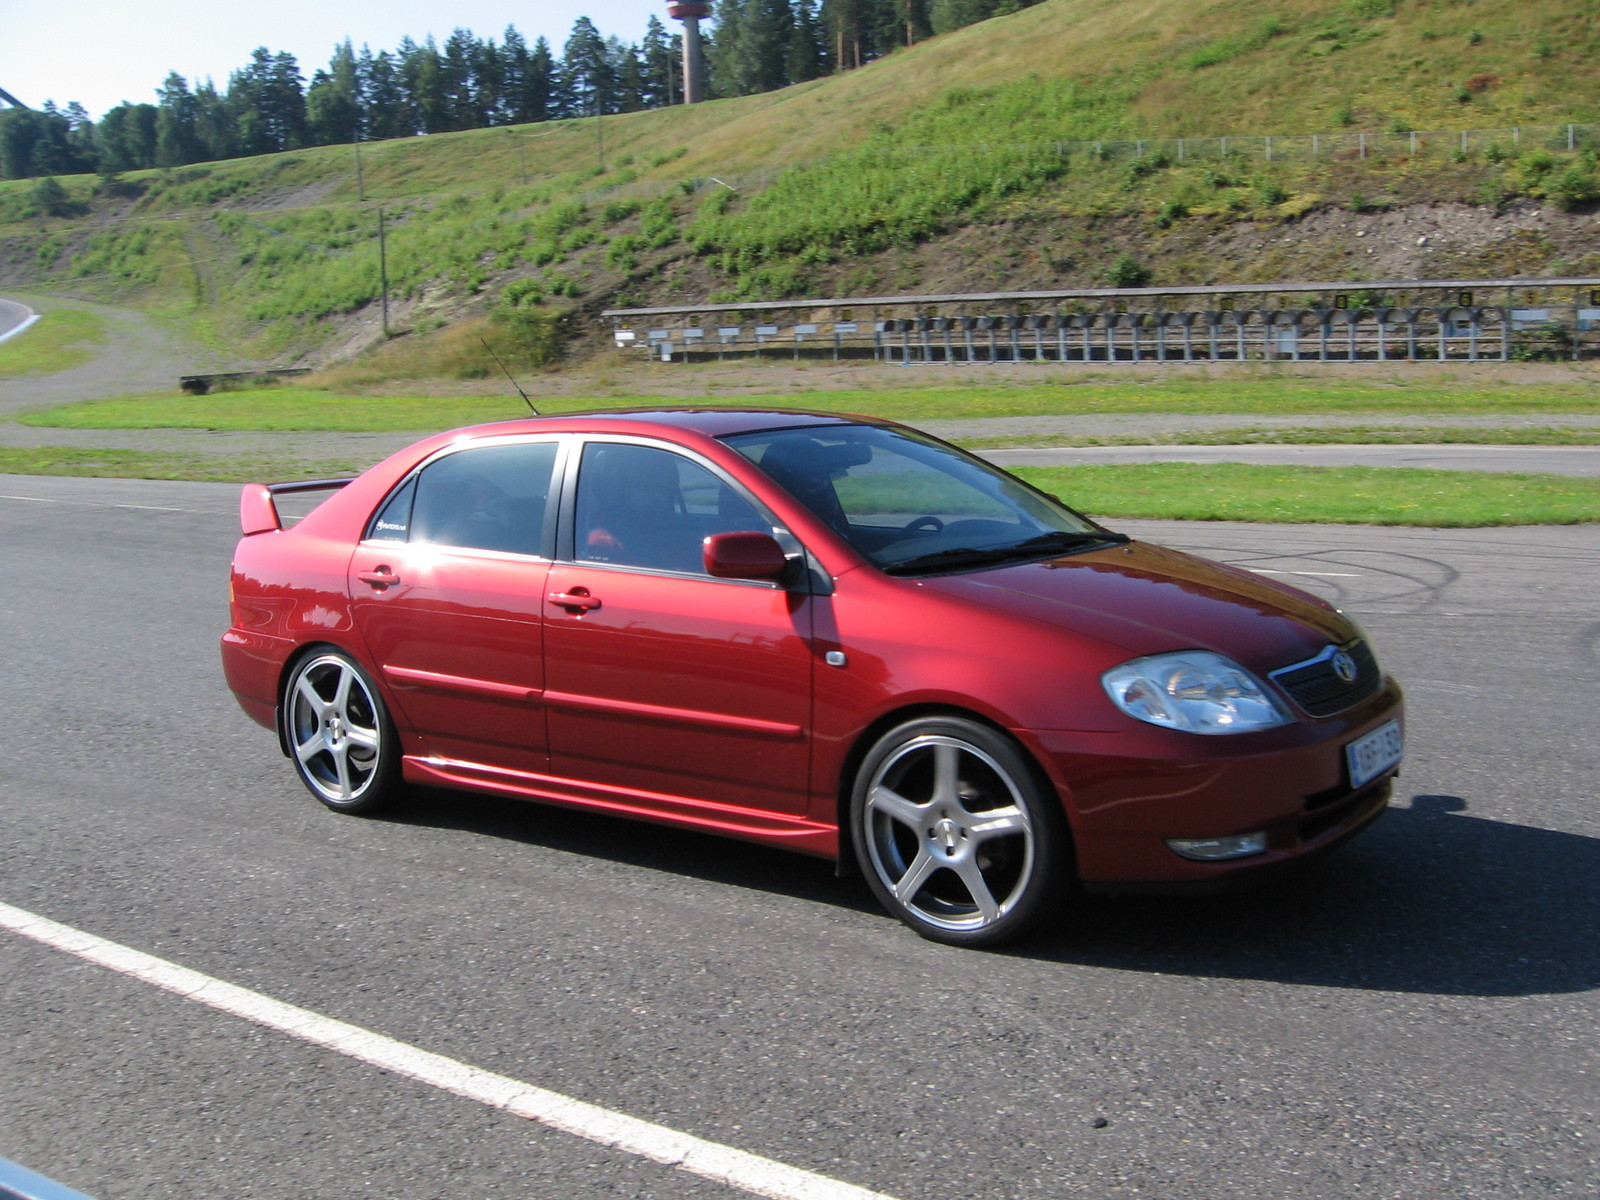 Fintoys ratapÃ¤ivÃ¤ 4.8.2007 Ahvenisto, Toyota Corolla, punainen